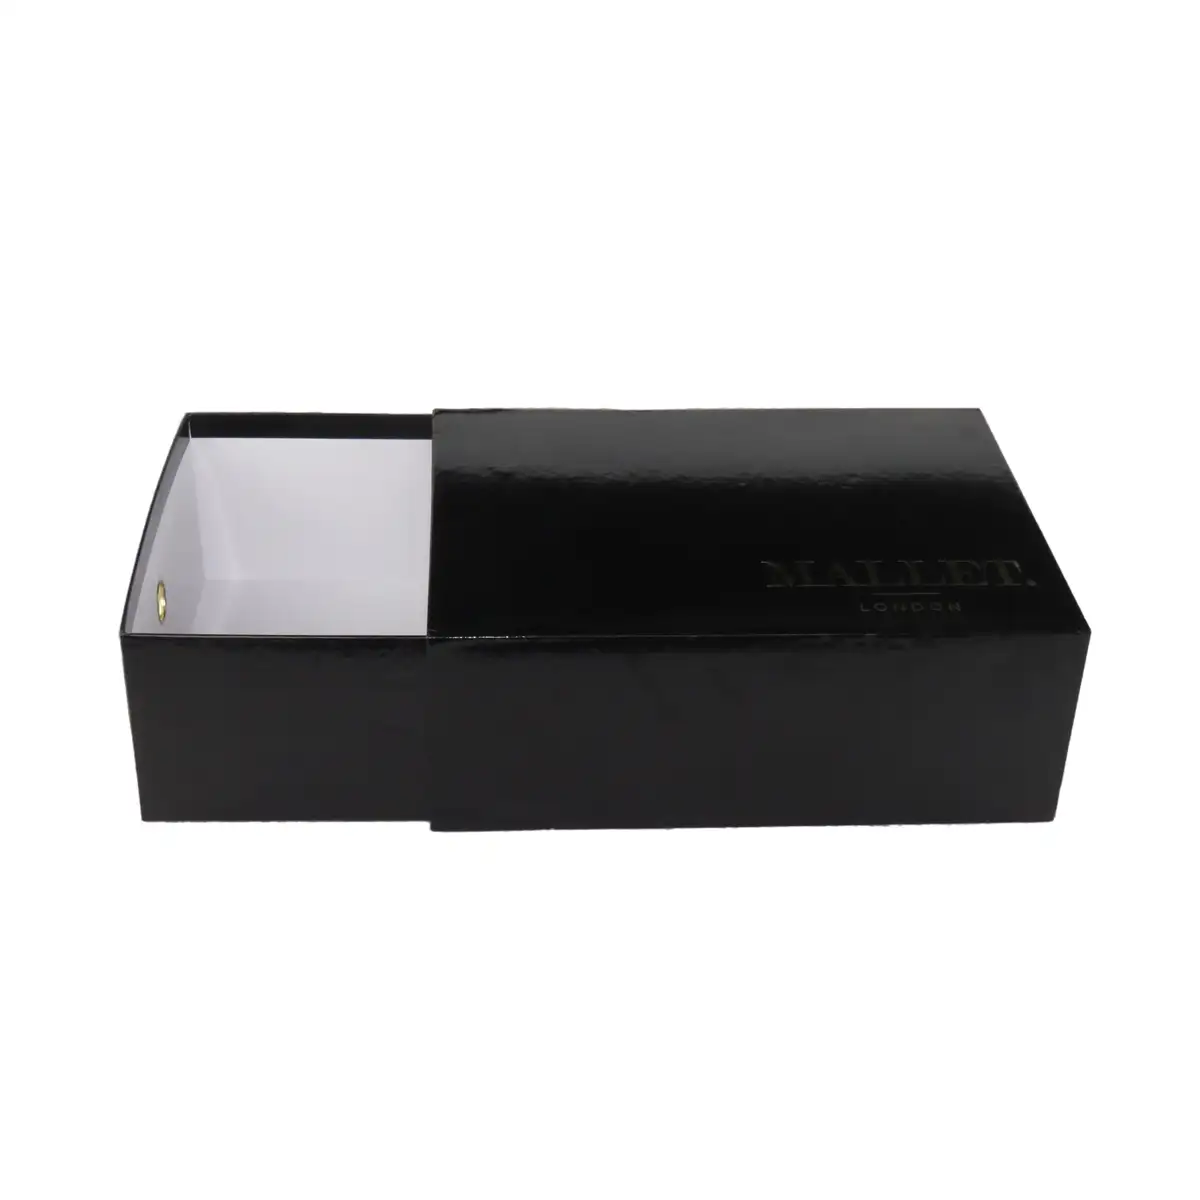 कस्टम लोगो काले चमकदार Stackable भंडारण गत्ता पैकेजिंग जूता बॉक्स